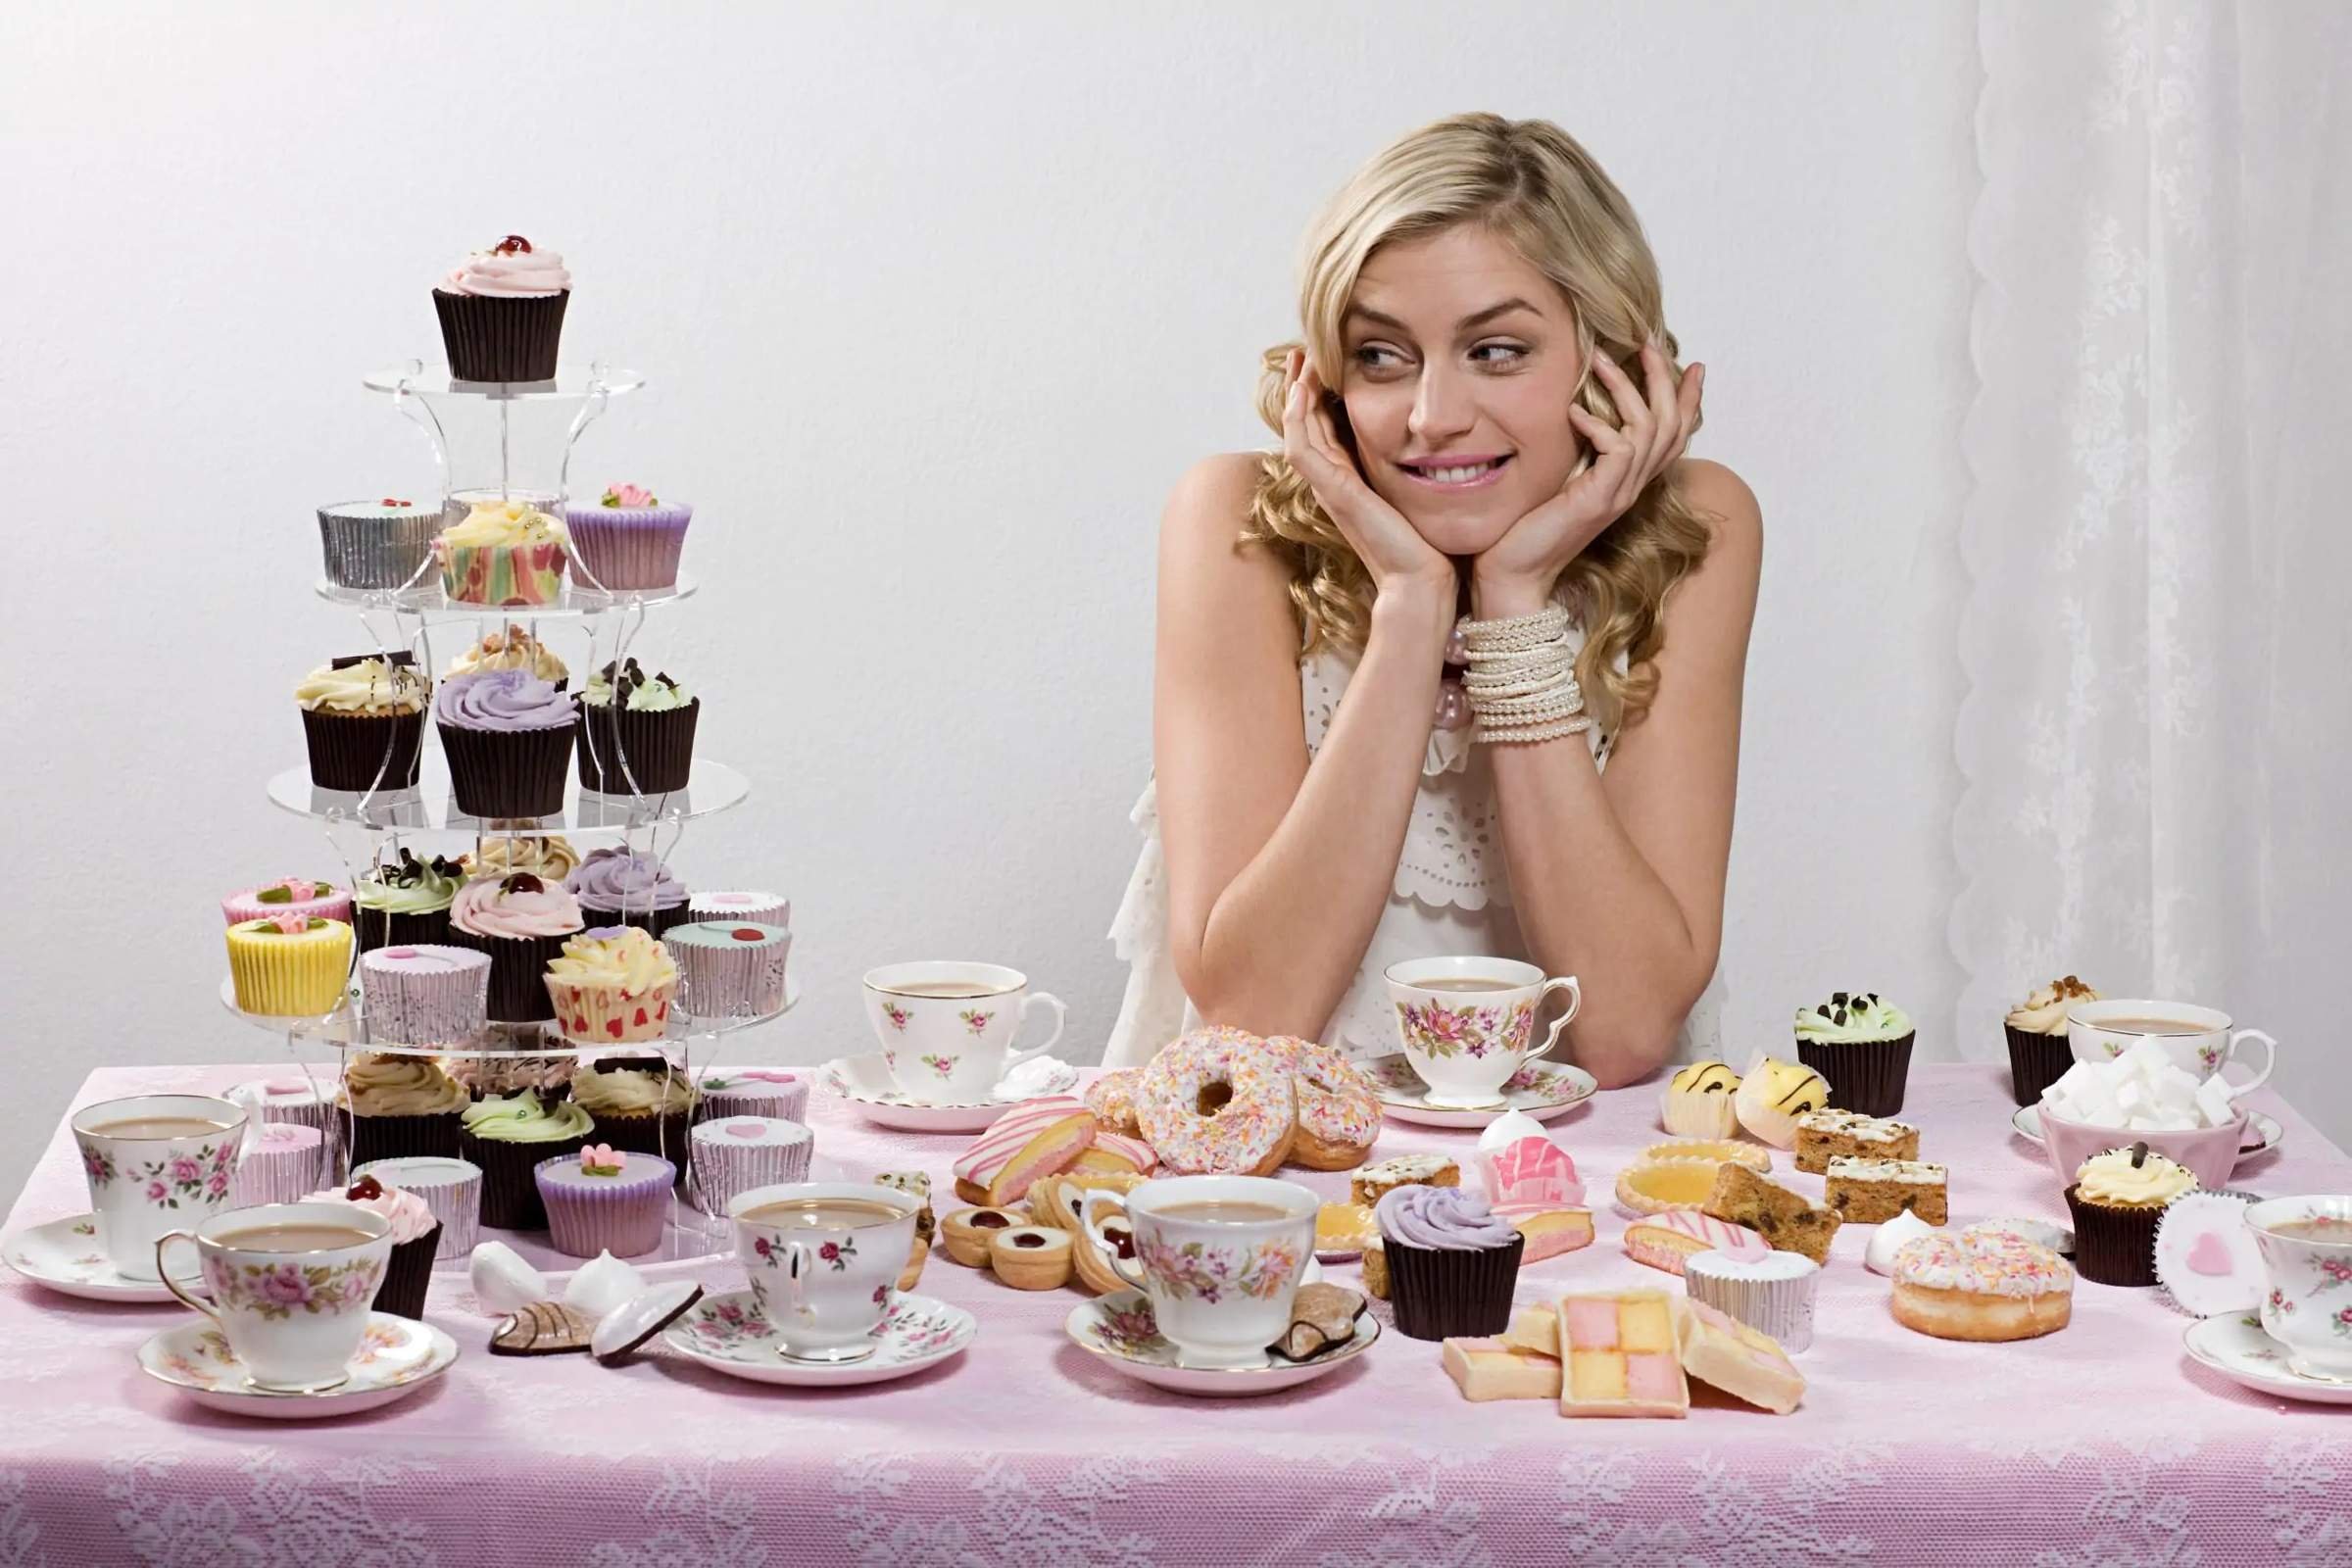 Пьем вместо еды. Девушка и пирожное. Девушка со сладостями. Торт для девушки. Человек ест сладкое.